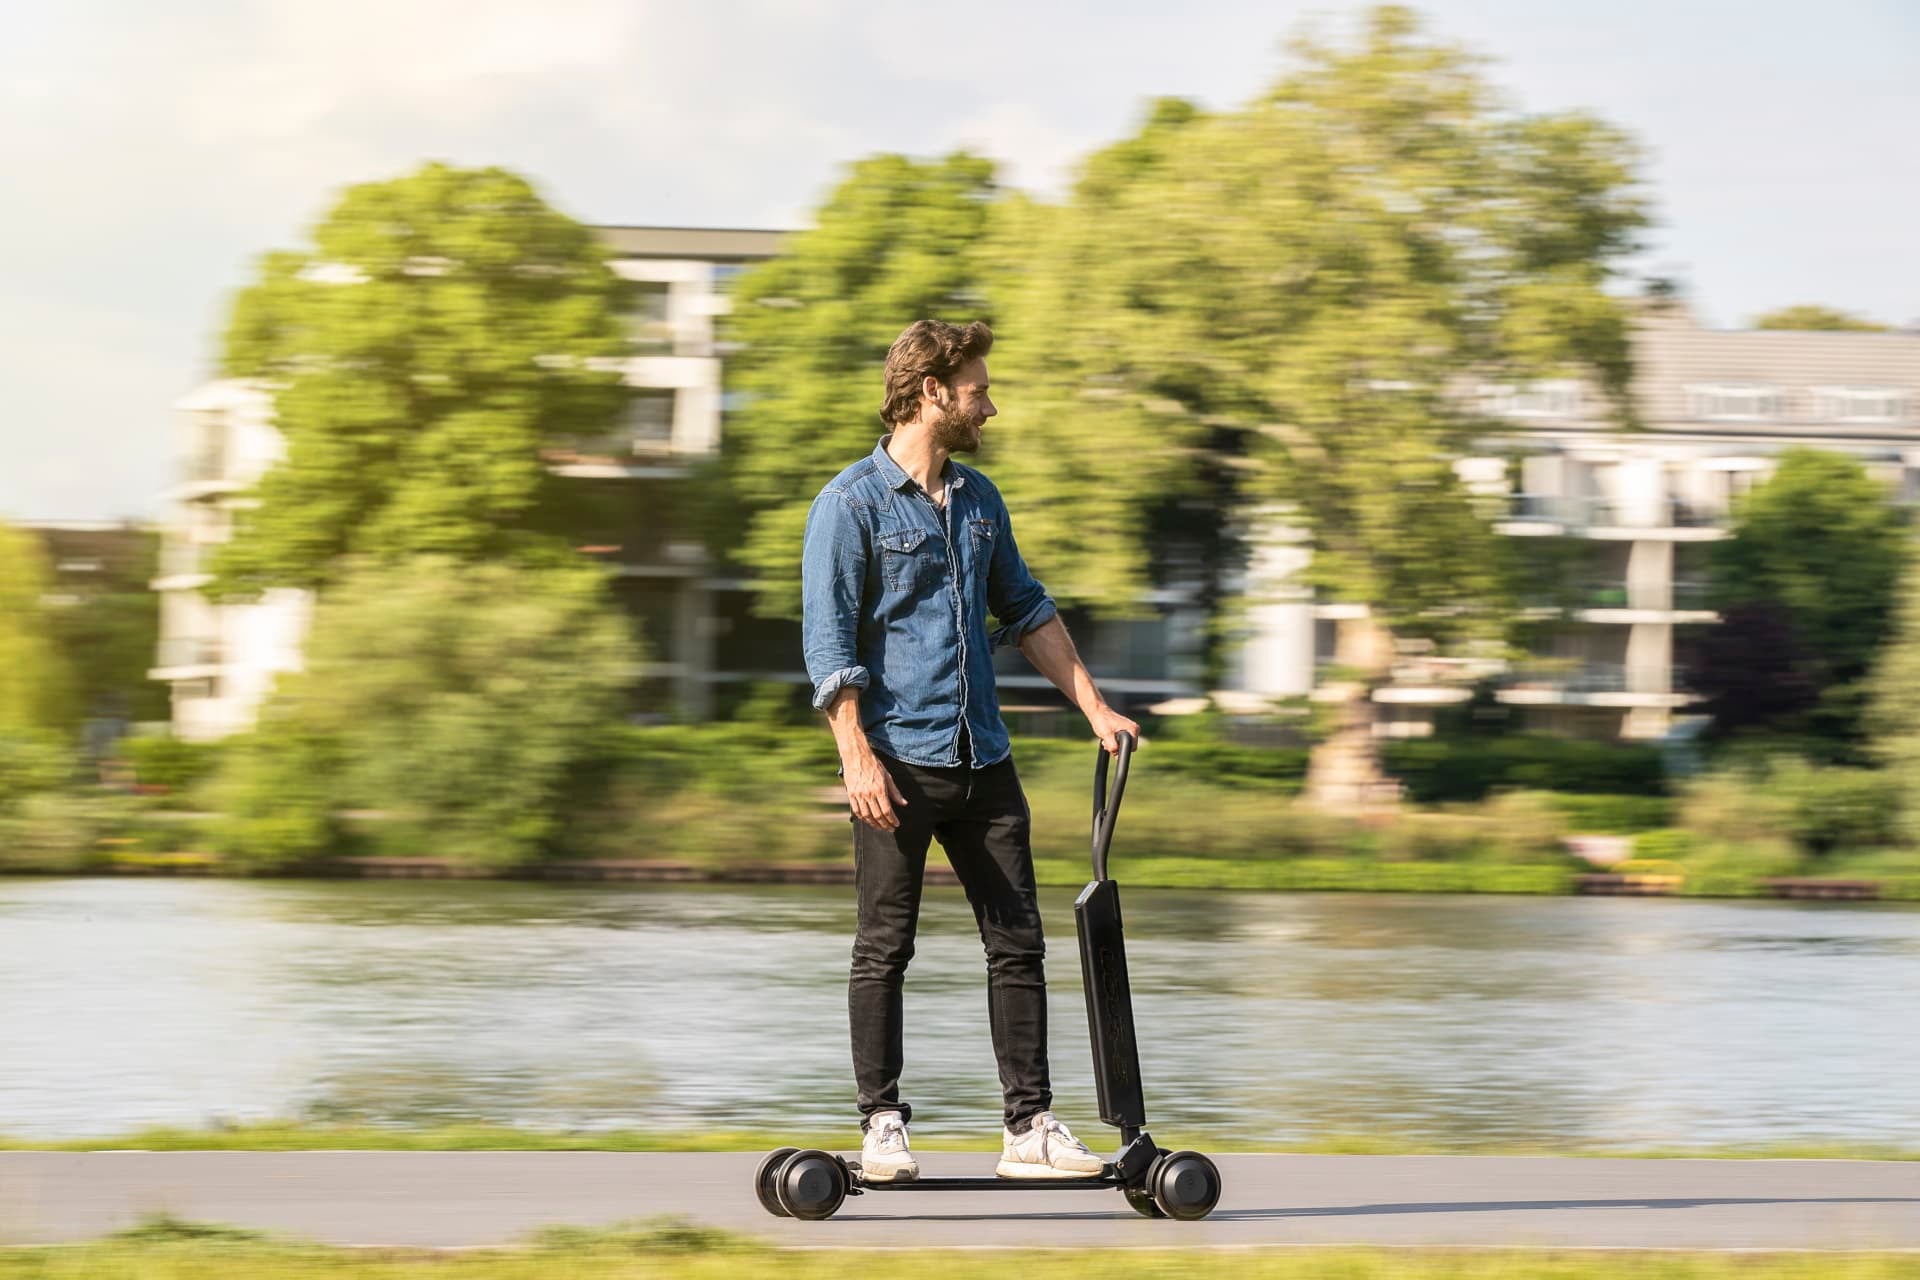 Audi ra mắt concept E-tron, xe scooter điện kết hợp với ván trượt tiện dụng